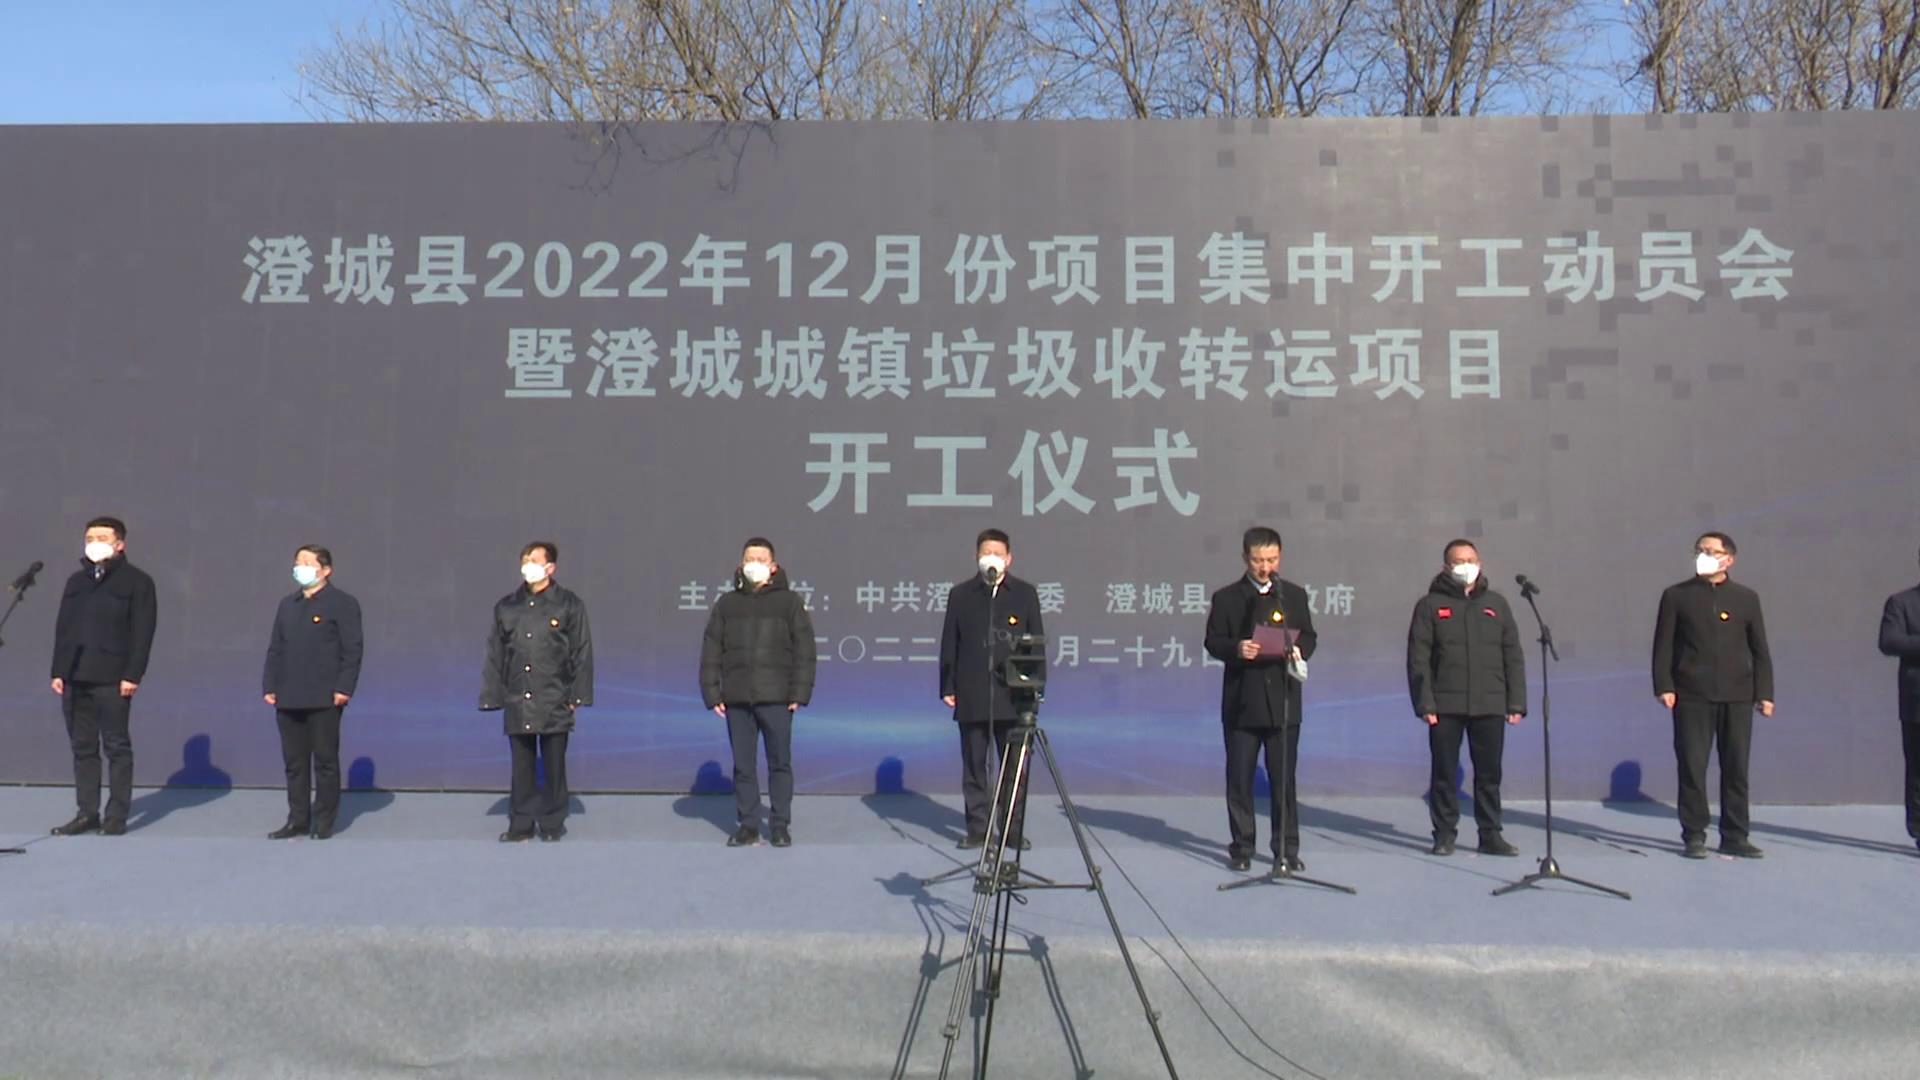 中陕核集团副总经理赵铜飞出席渭南市12月份项目集中开工动员会开工仪式